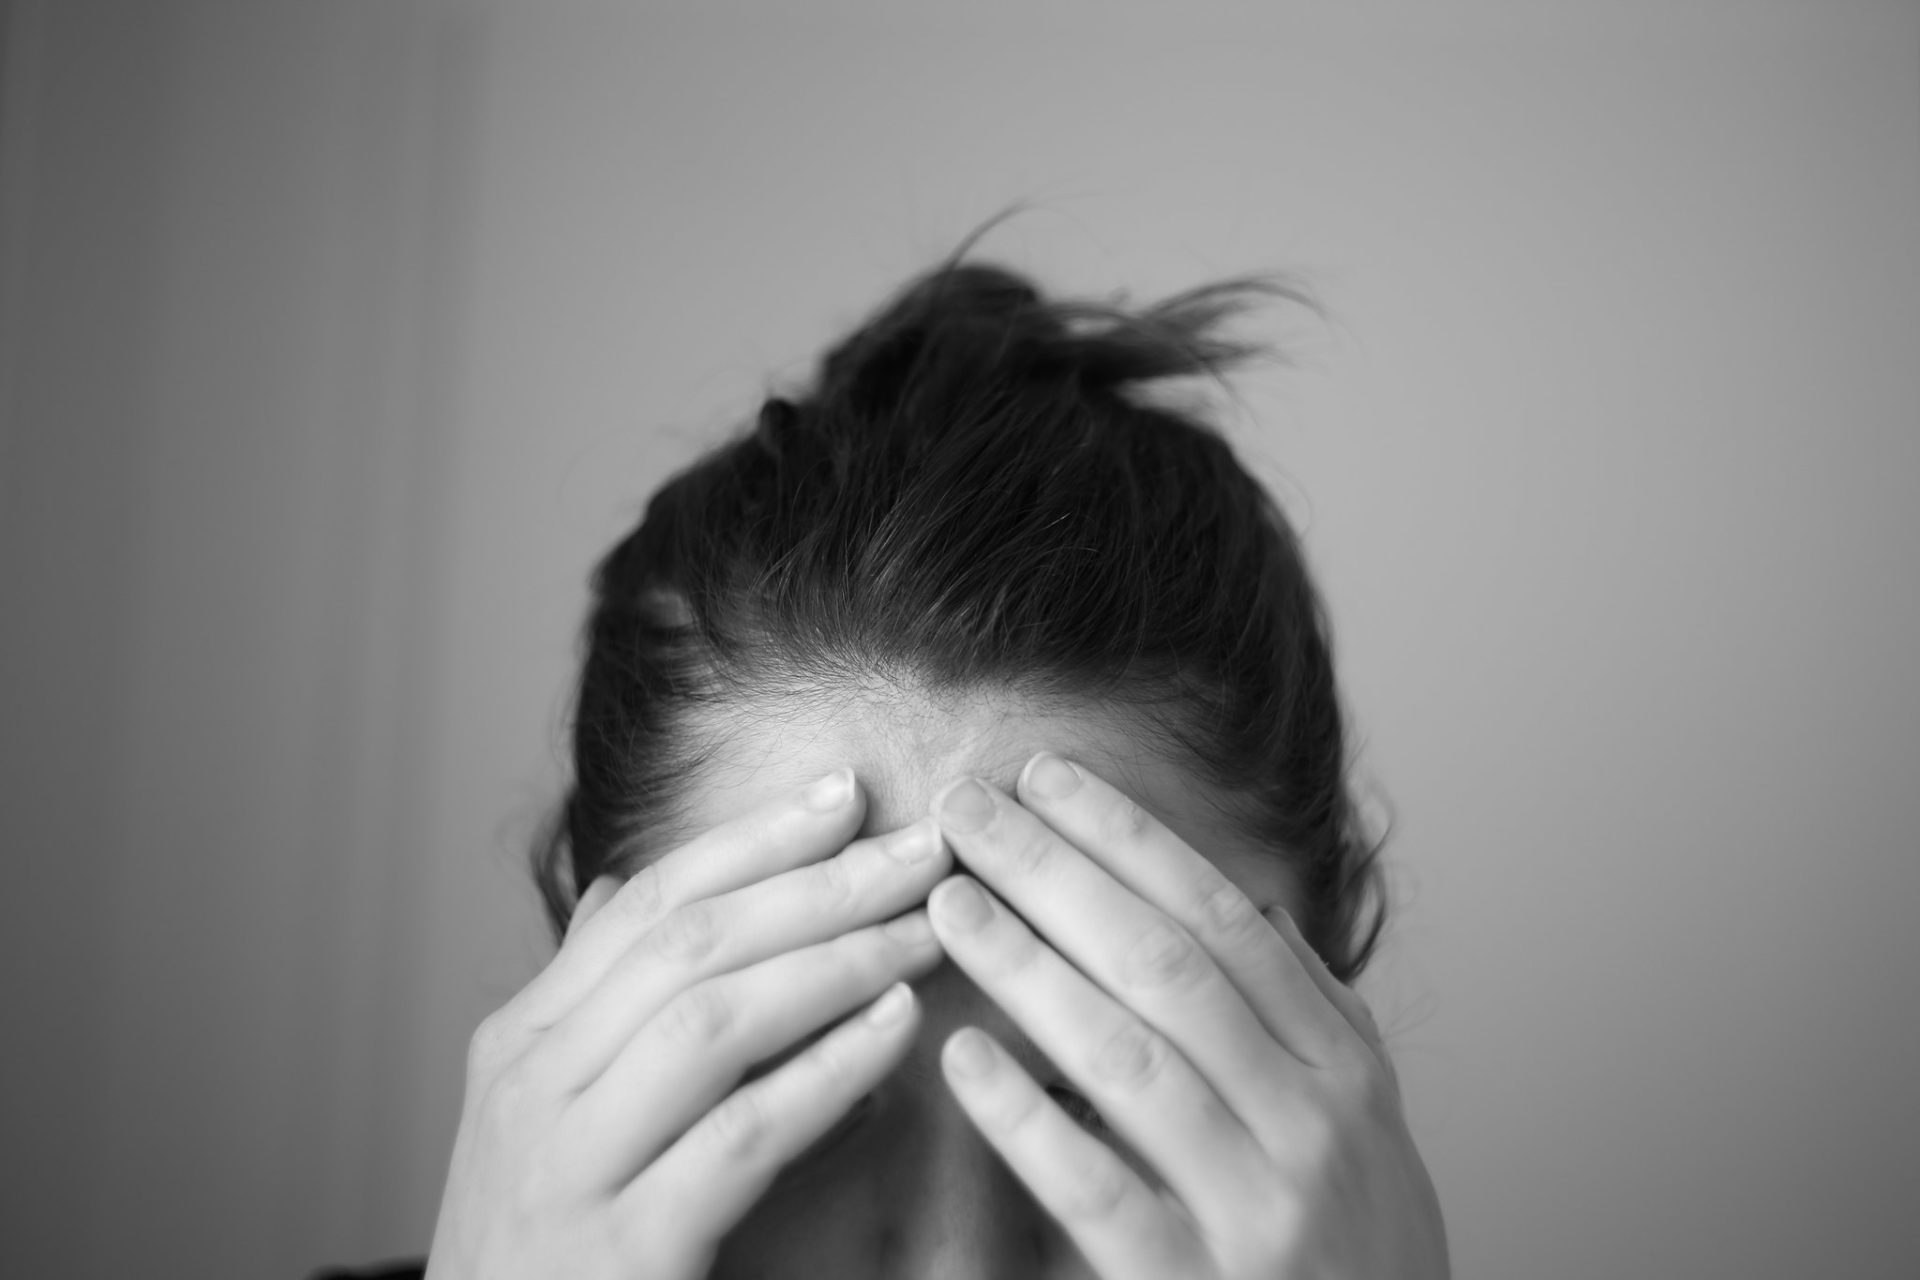 ผู้ควบคุมเนื้อหา TikTok ฟ้องบริษัท ที่ทำให้เธอเกิดอาการผิดปกติทางจิตใจ (PTSD)